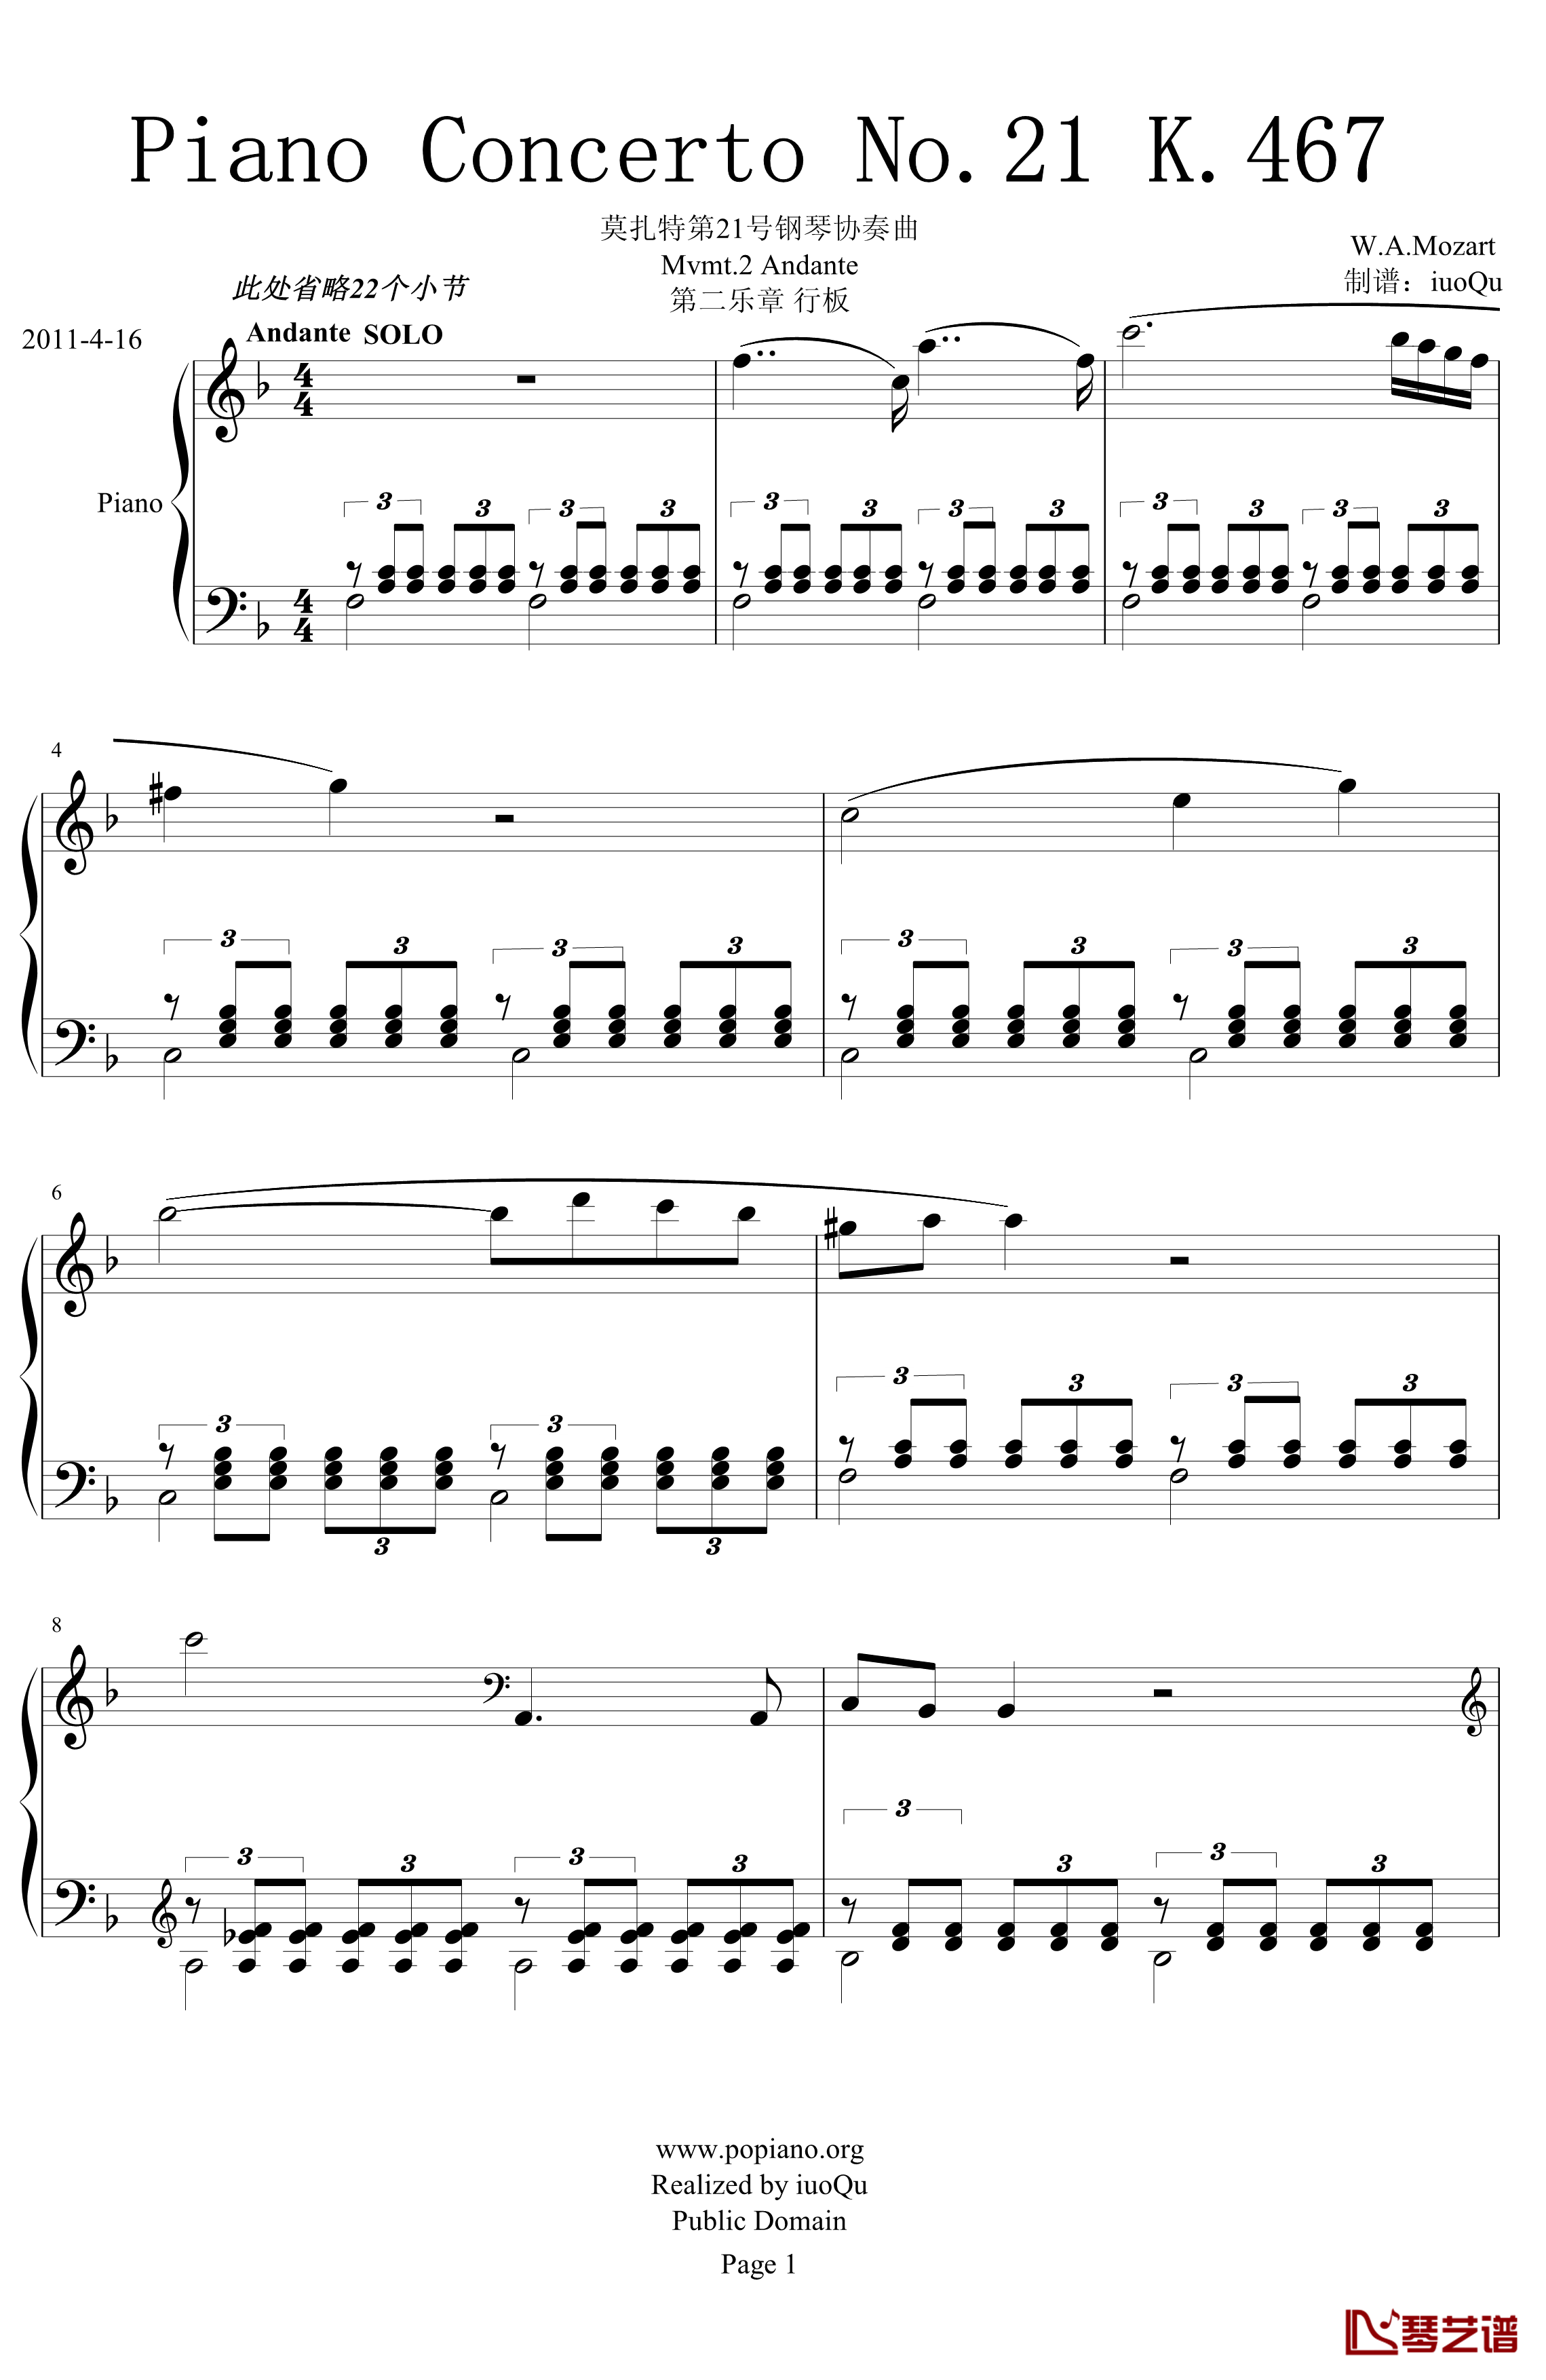 莫扎特第21号钢琴协奏曲钢琴谱 第二乐章 行板 K 467-莫扎特1